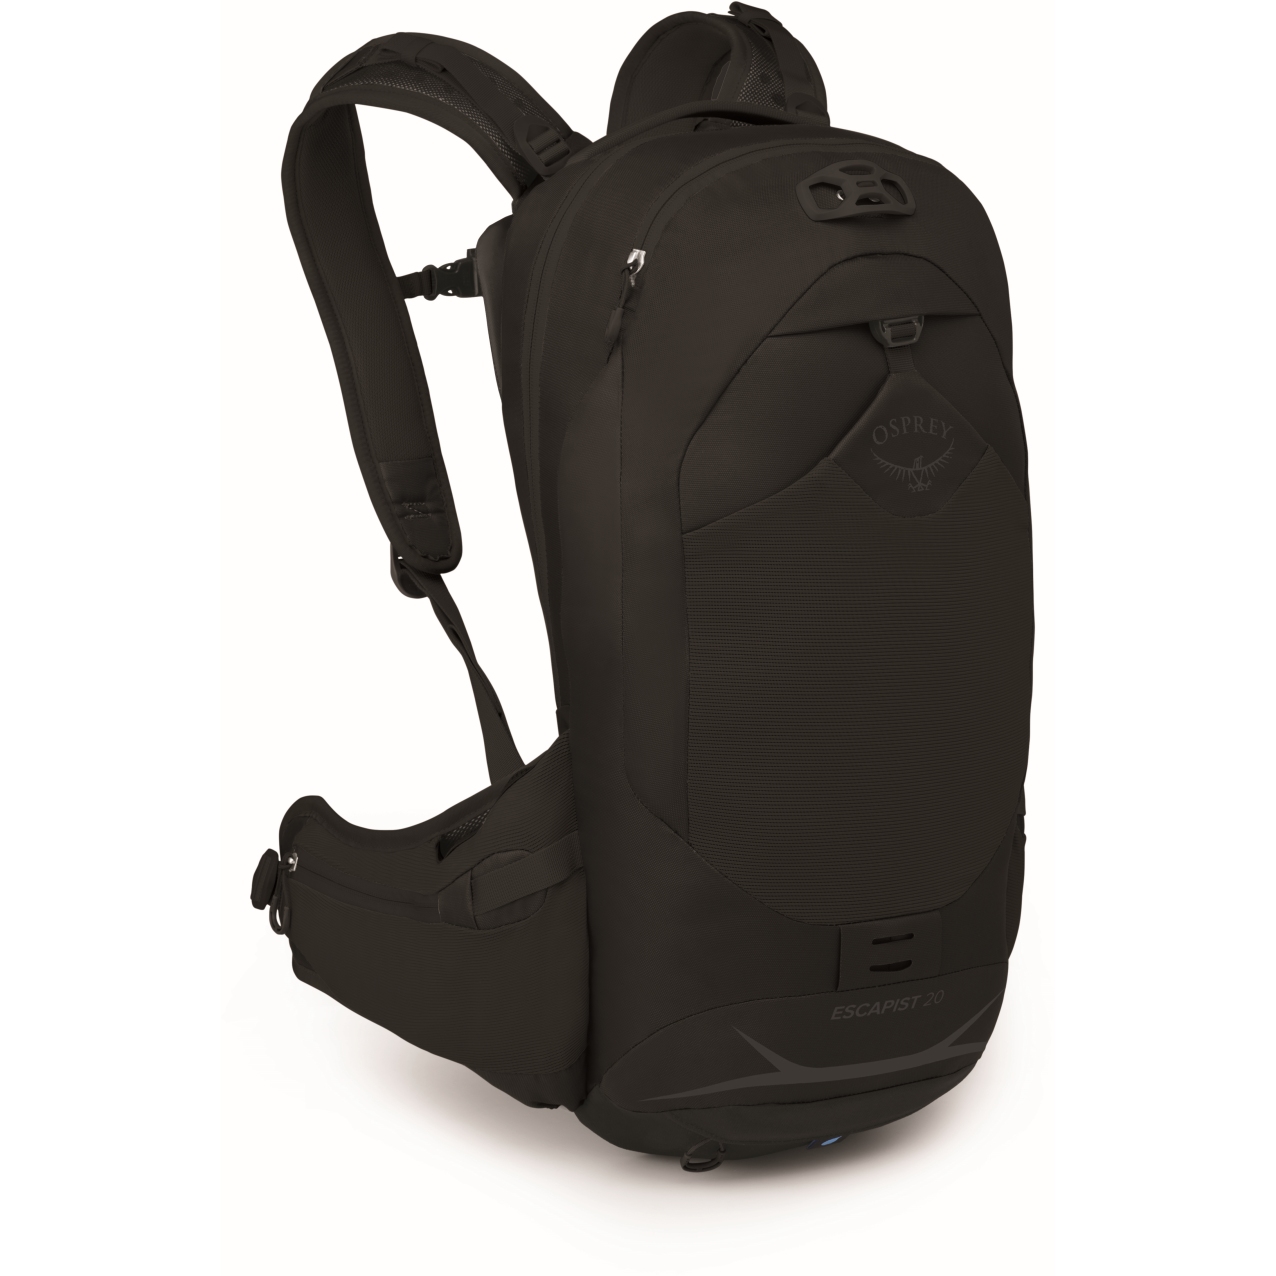 Image of Osprey Escapist 20 Backpack - Black - M/L